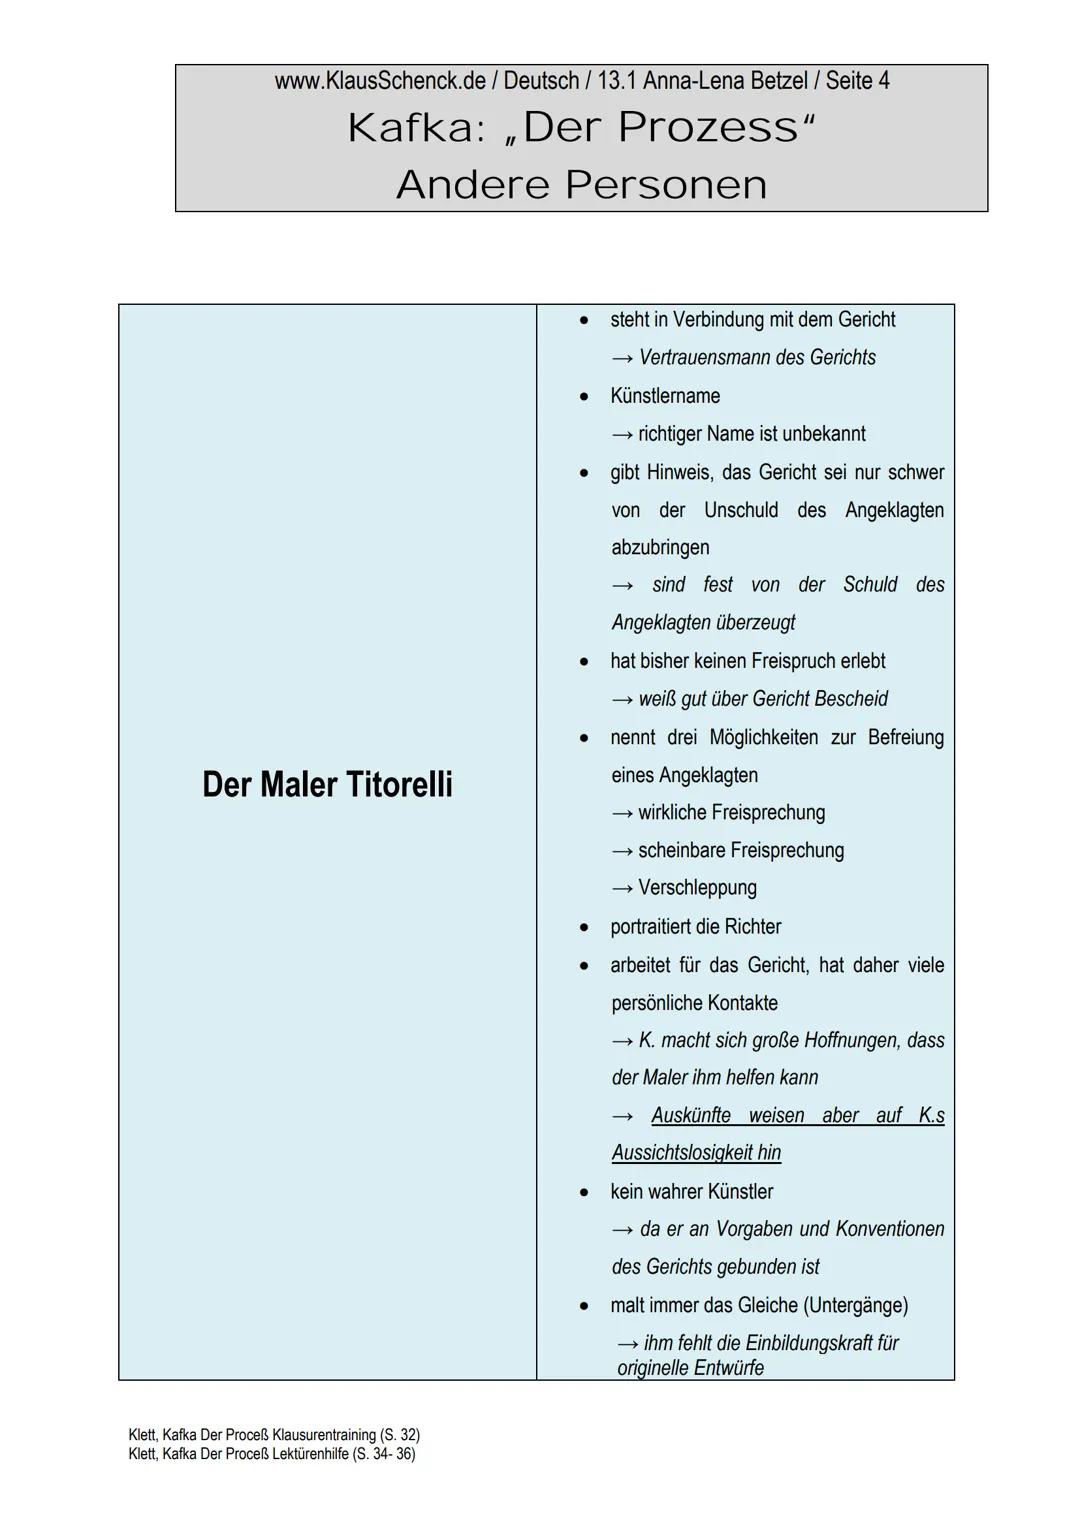 www.KlausSchenck.de / Deutsch / 13.1 Anna-Lena Betzel / Seite 1
Kafka: „Der Prozess“
Andere Personen
1. Allgemeine Begriffserklärung:
Advoka